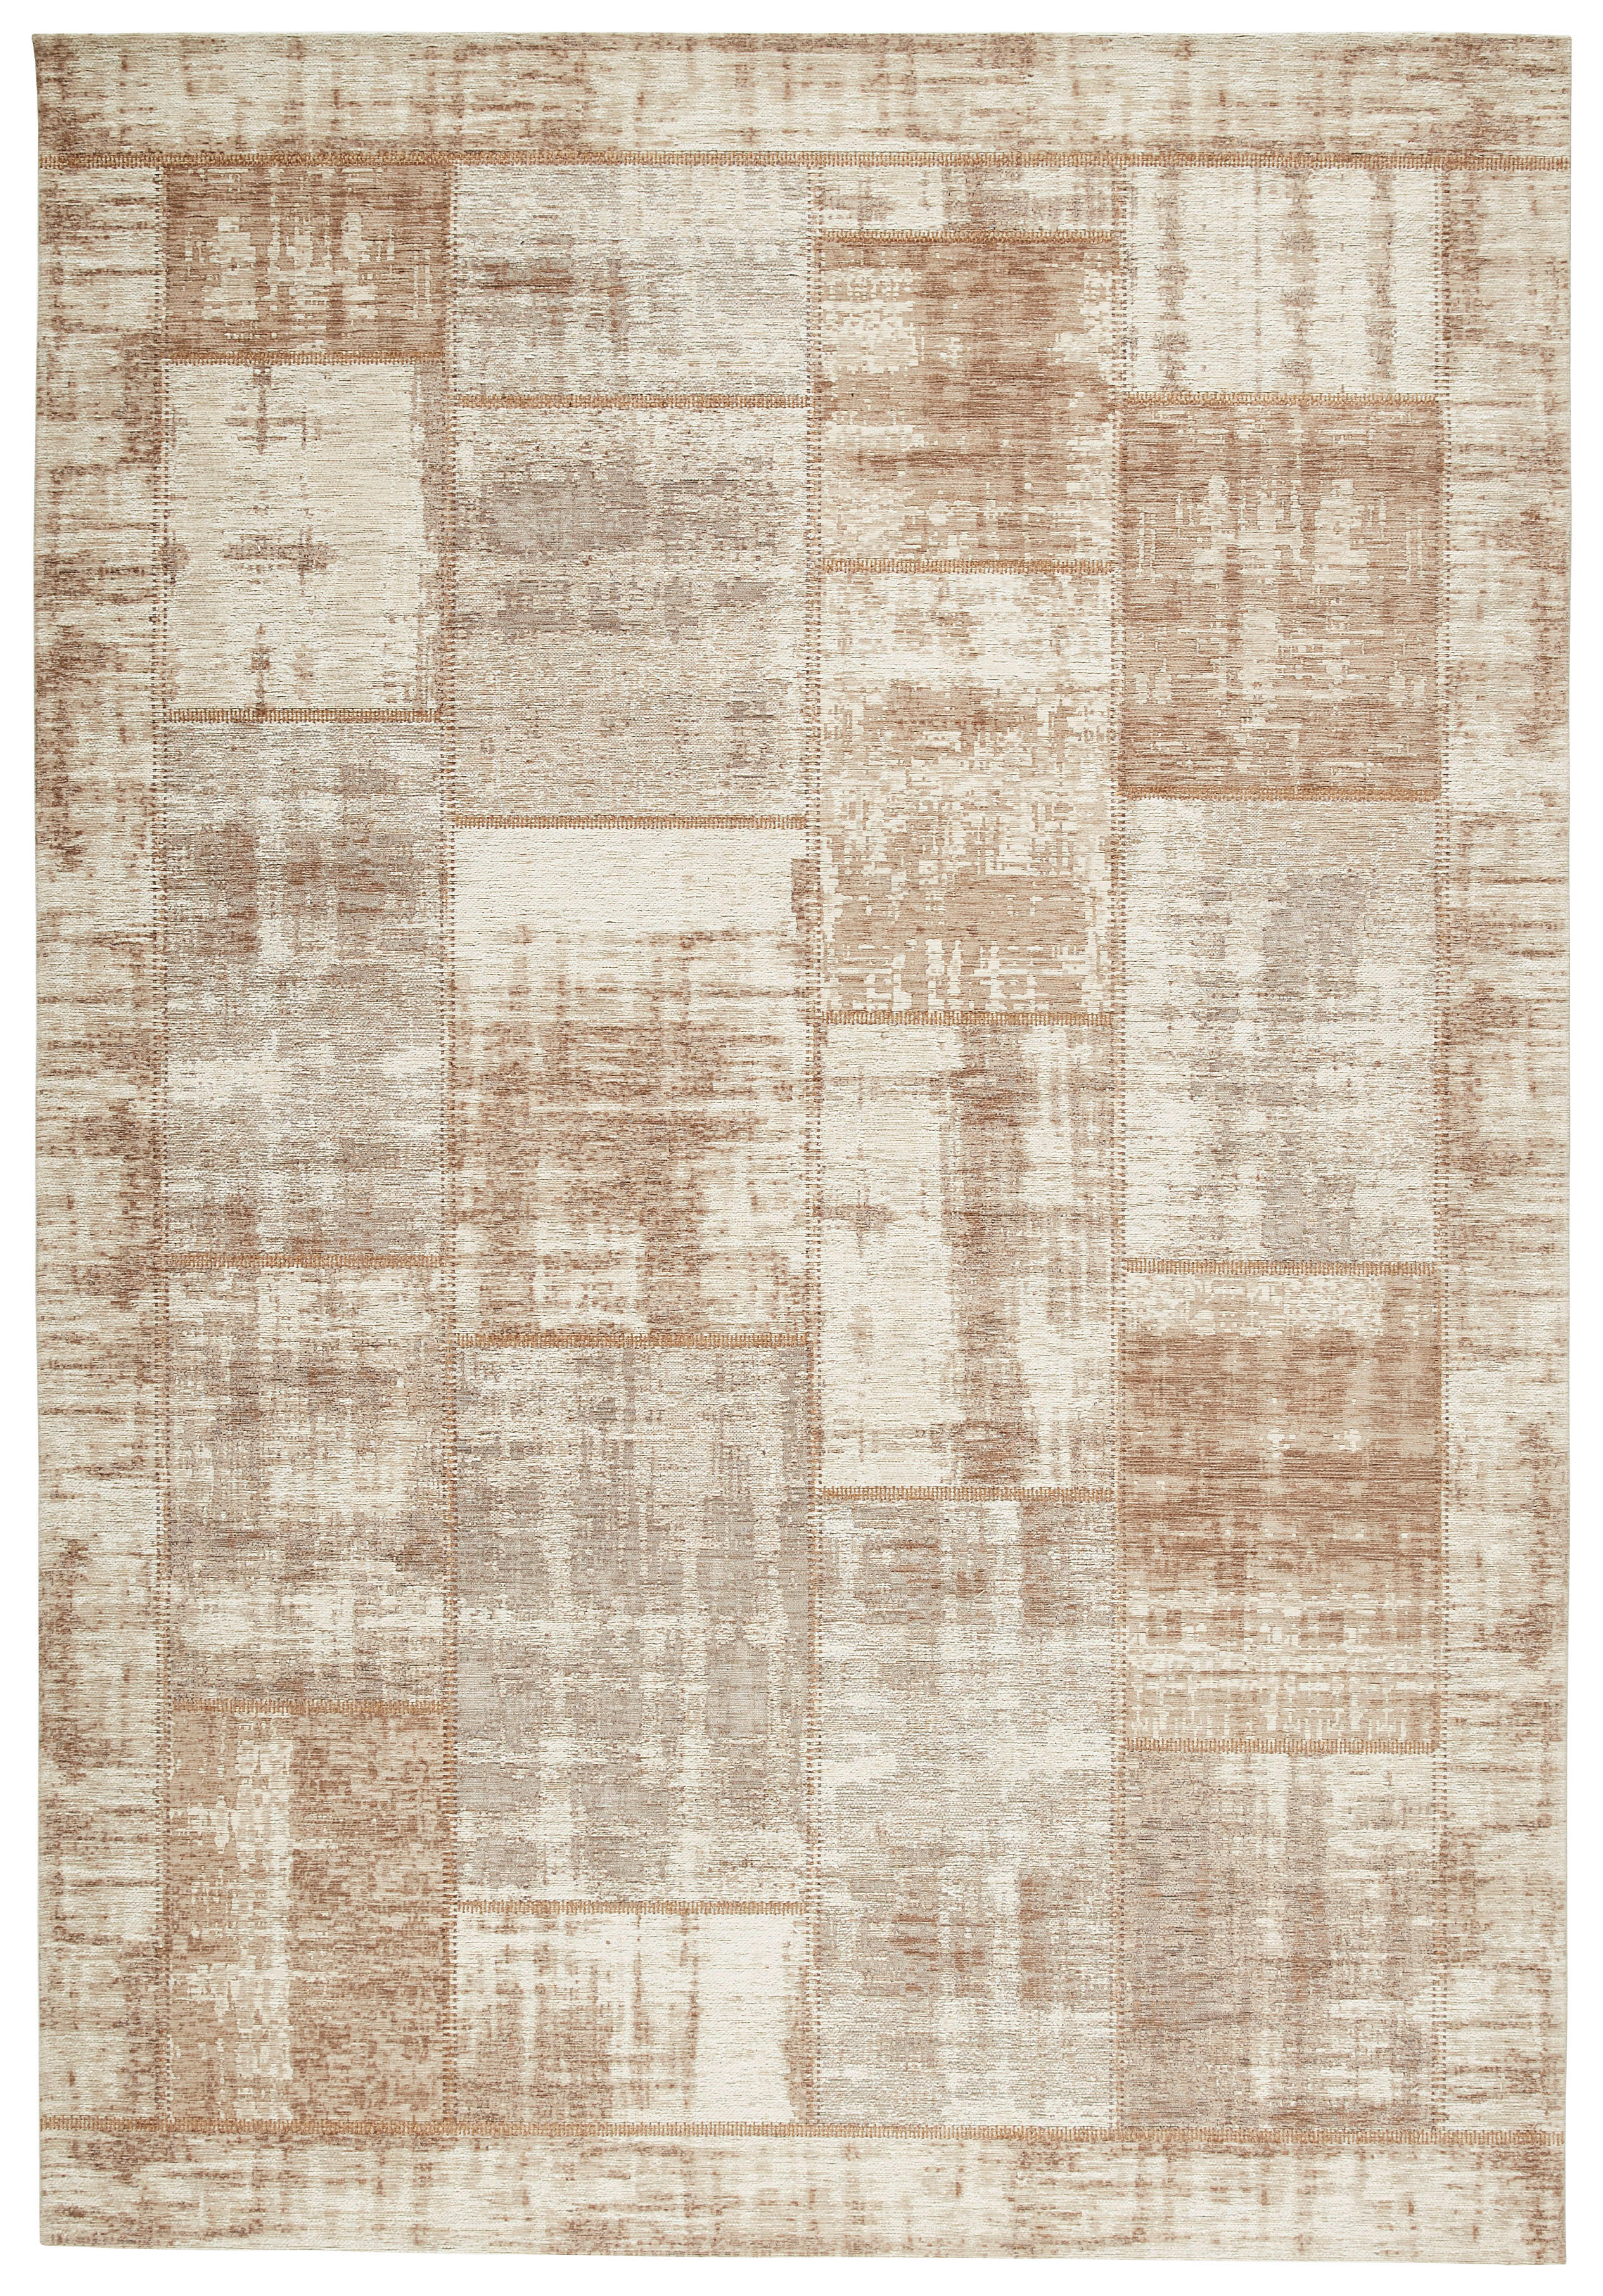 FLACHWEBETEPPICH  200/200 cm  Beige   - Beige, Trend, Textil (200/200cm) - Novel